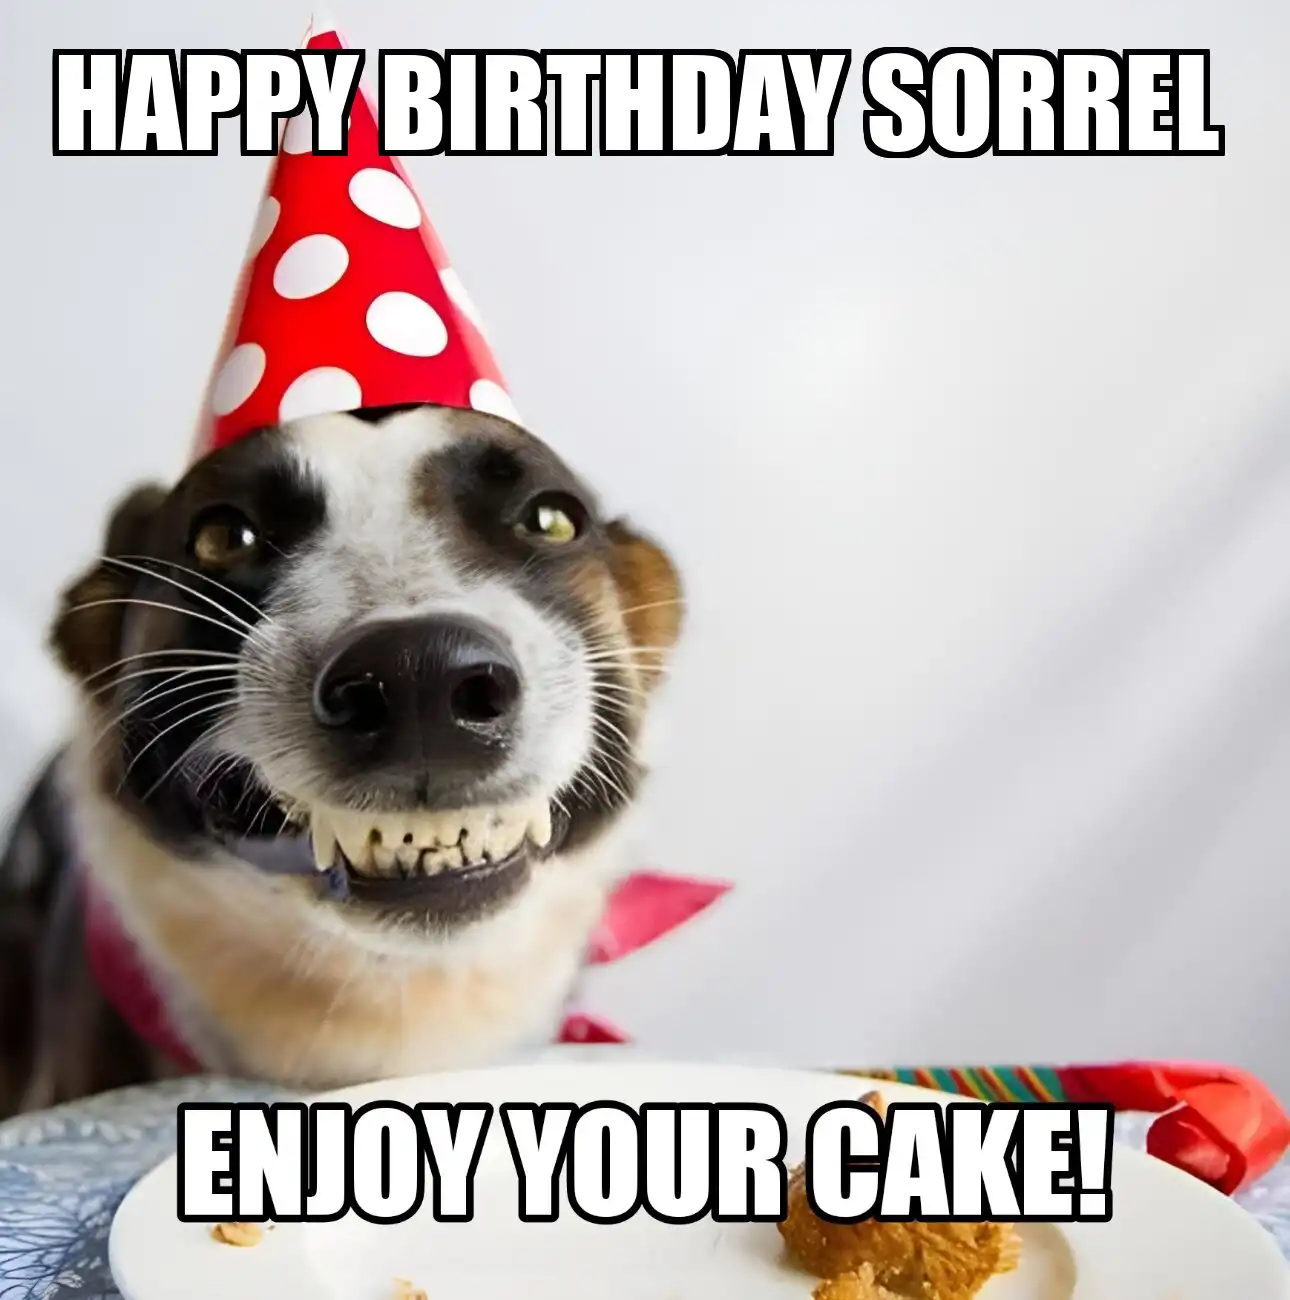 Happy Birthday Sorrel Enjoy Your Cake Dog Meme